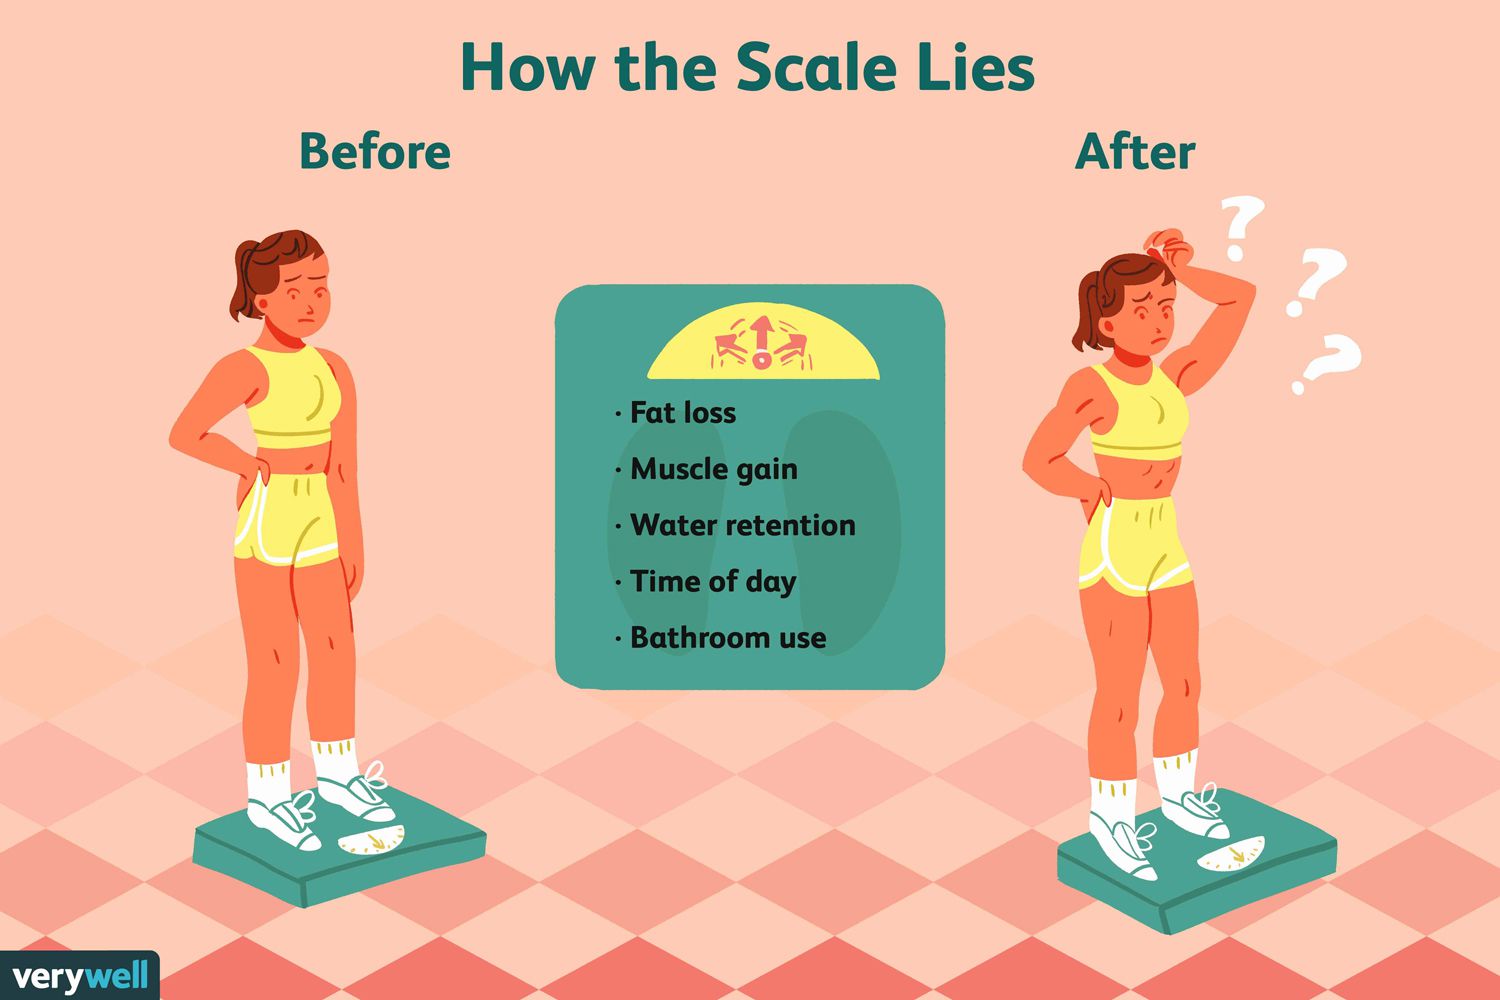 Por qué utilizar una báscula no siempre es la mejor forma de medir la pérdida de peso